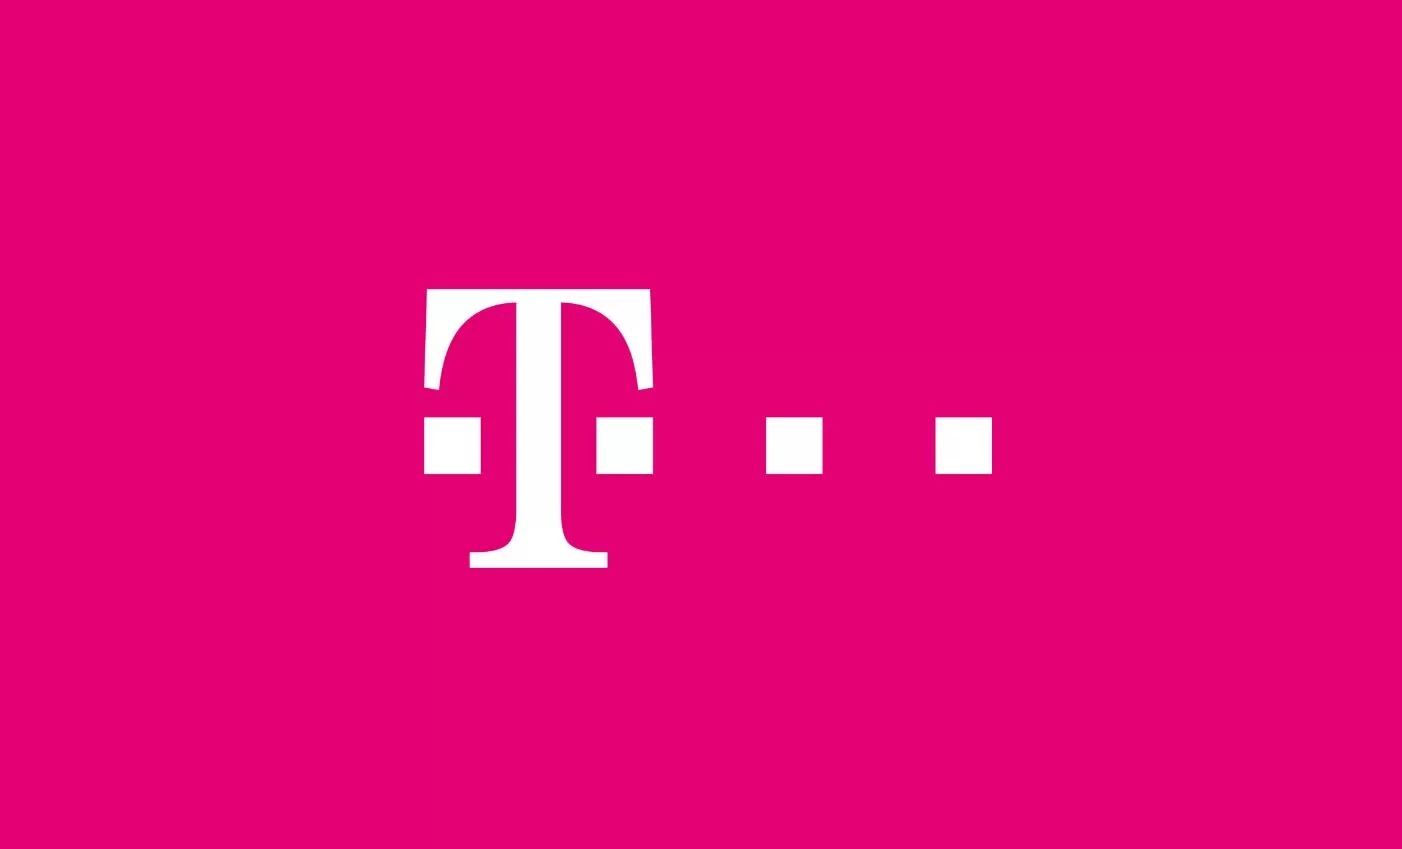 Telekom kollaborációs és irodaterek távközlés,europadesign,HermanMiller